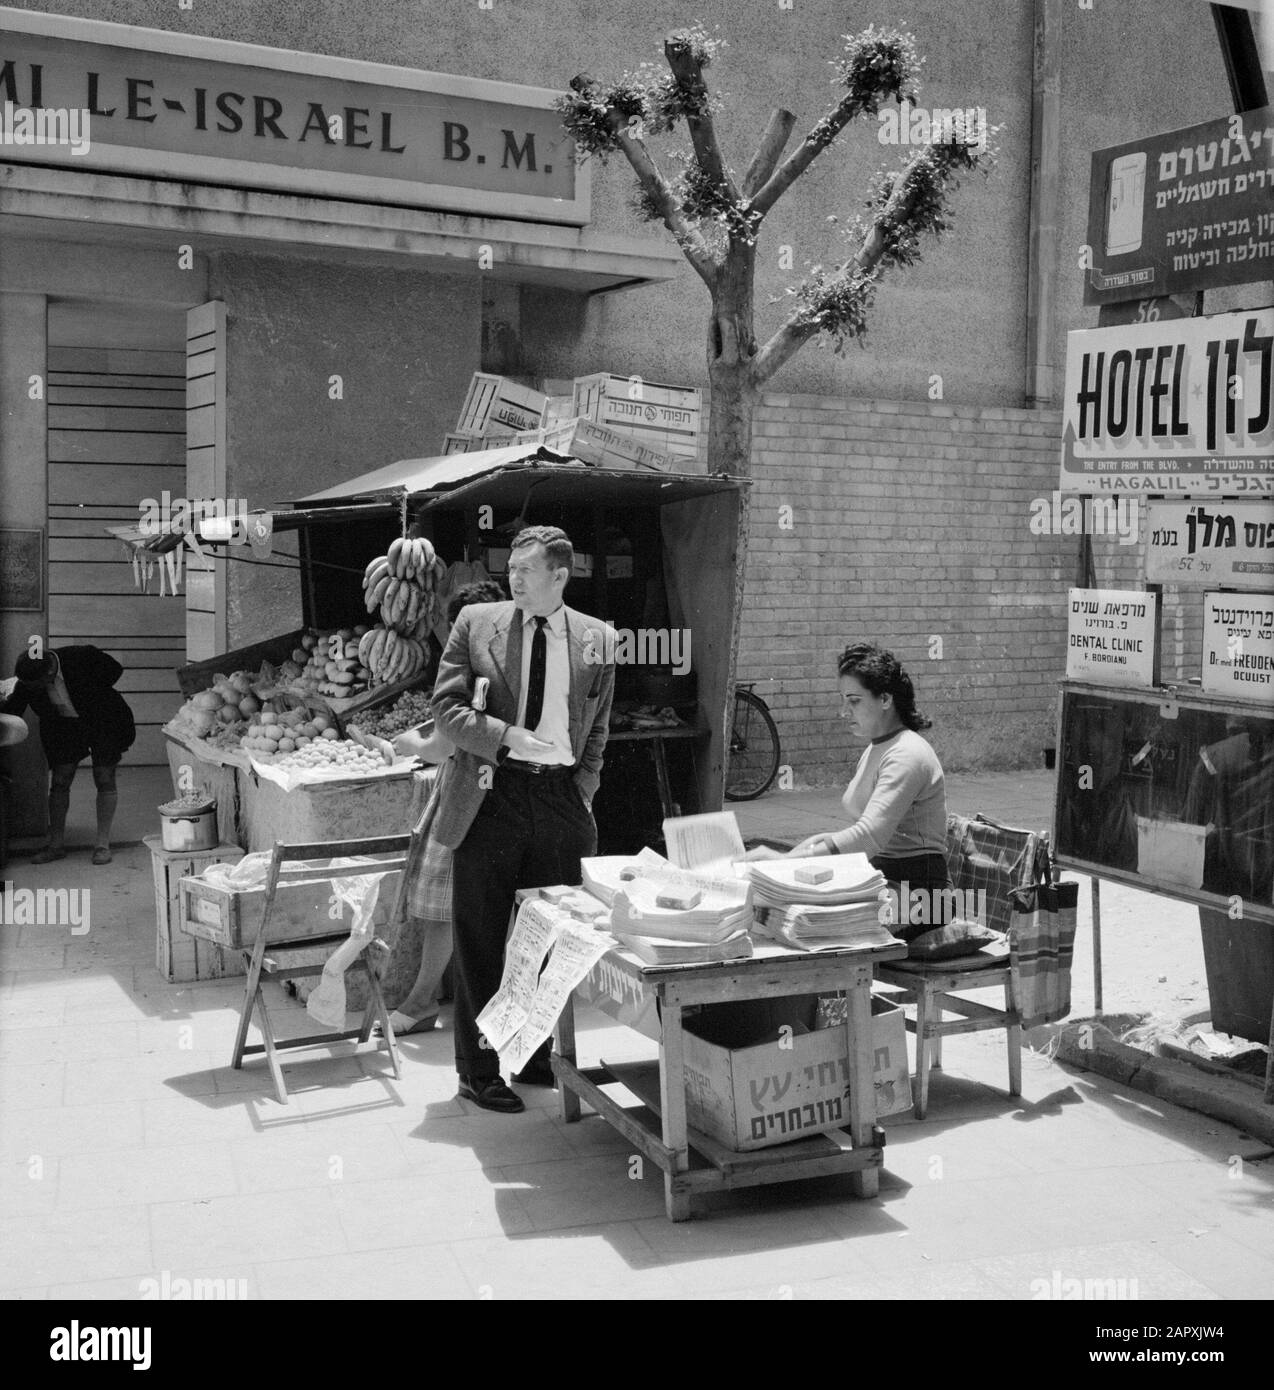 Israele 1964-1965: Tel Aviv, venditori ambulanti fornitore di frutta e un fornitore di strada di giornali Data: 1964 luogo: Israele, Tel Aviv Parole Chiave: Frutta, giornali, statue di strada, venditori ambulanti Foto Stock